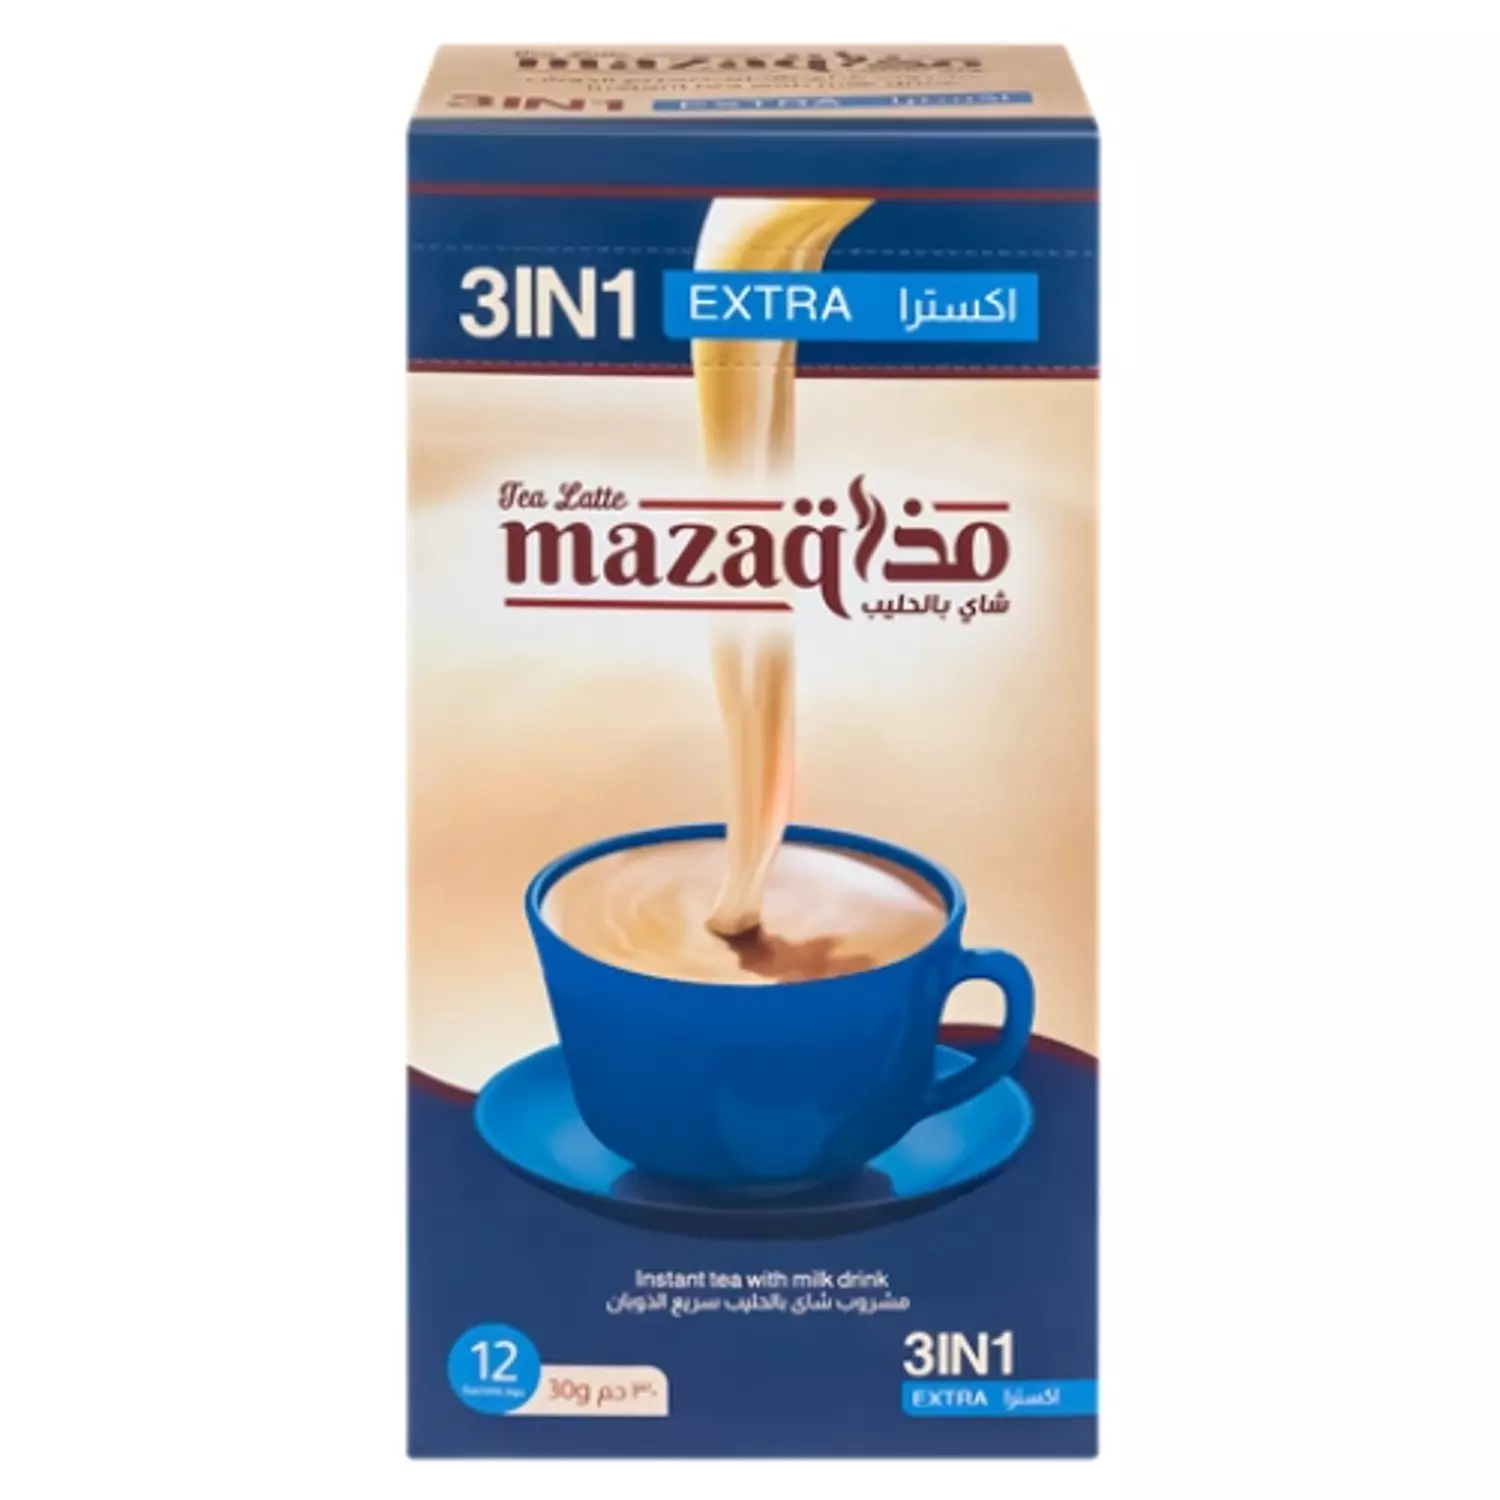 Mazaq Tea latte extra sachets box -12 sachet hover image